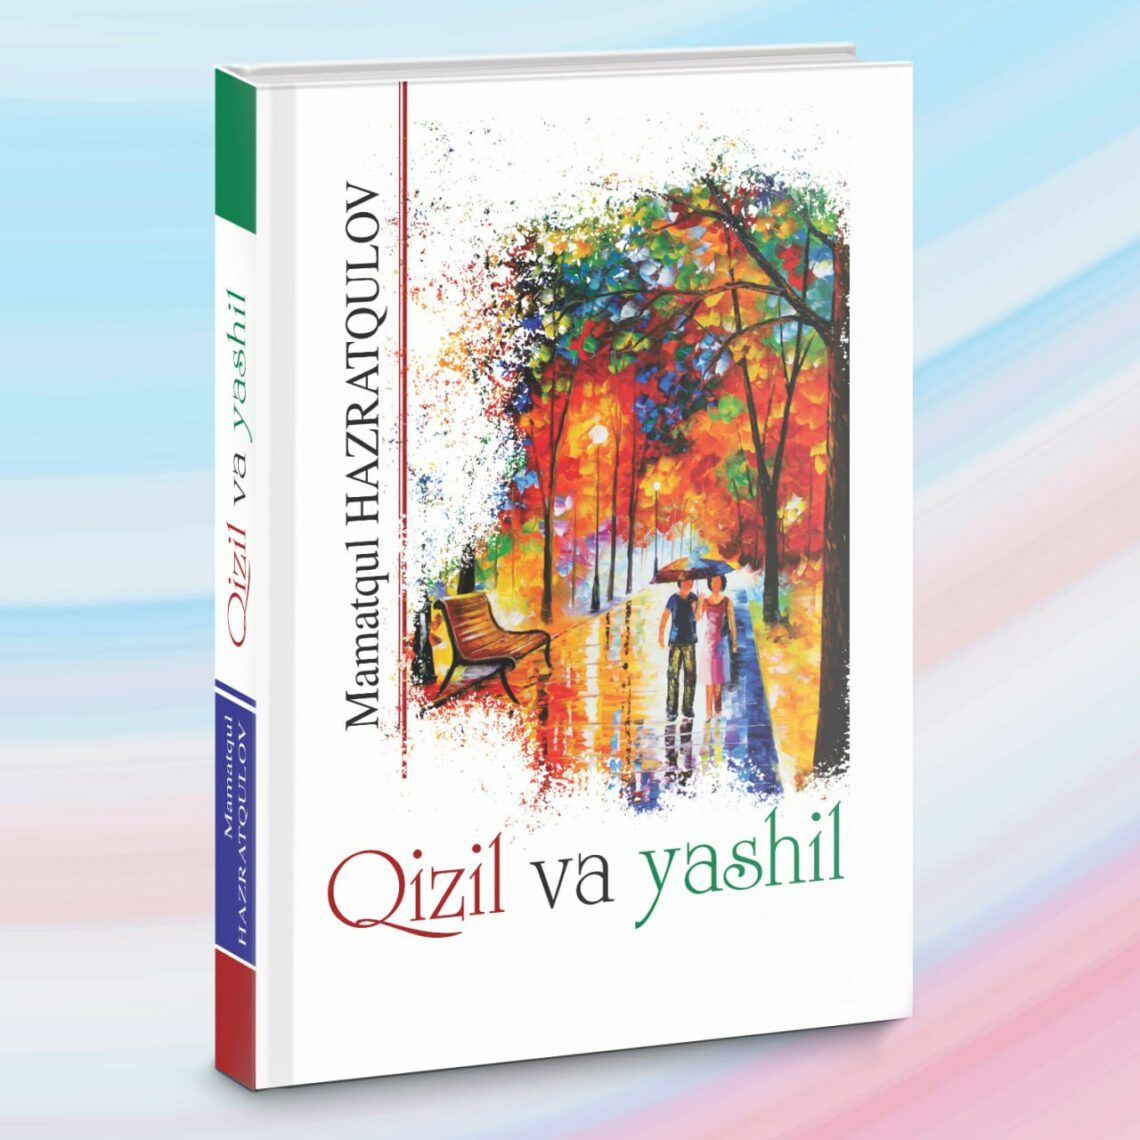 Qizil va yashil